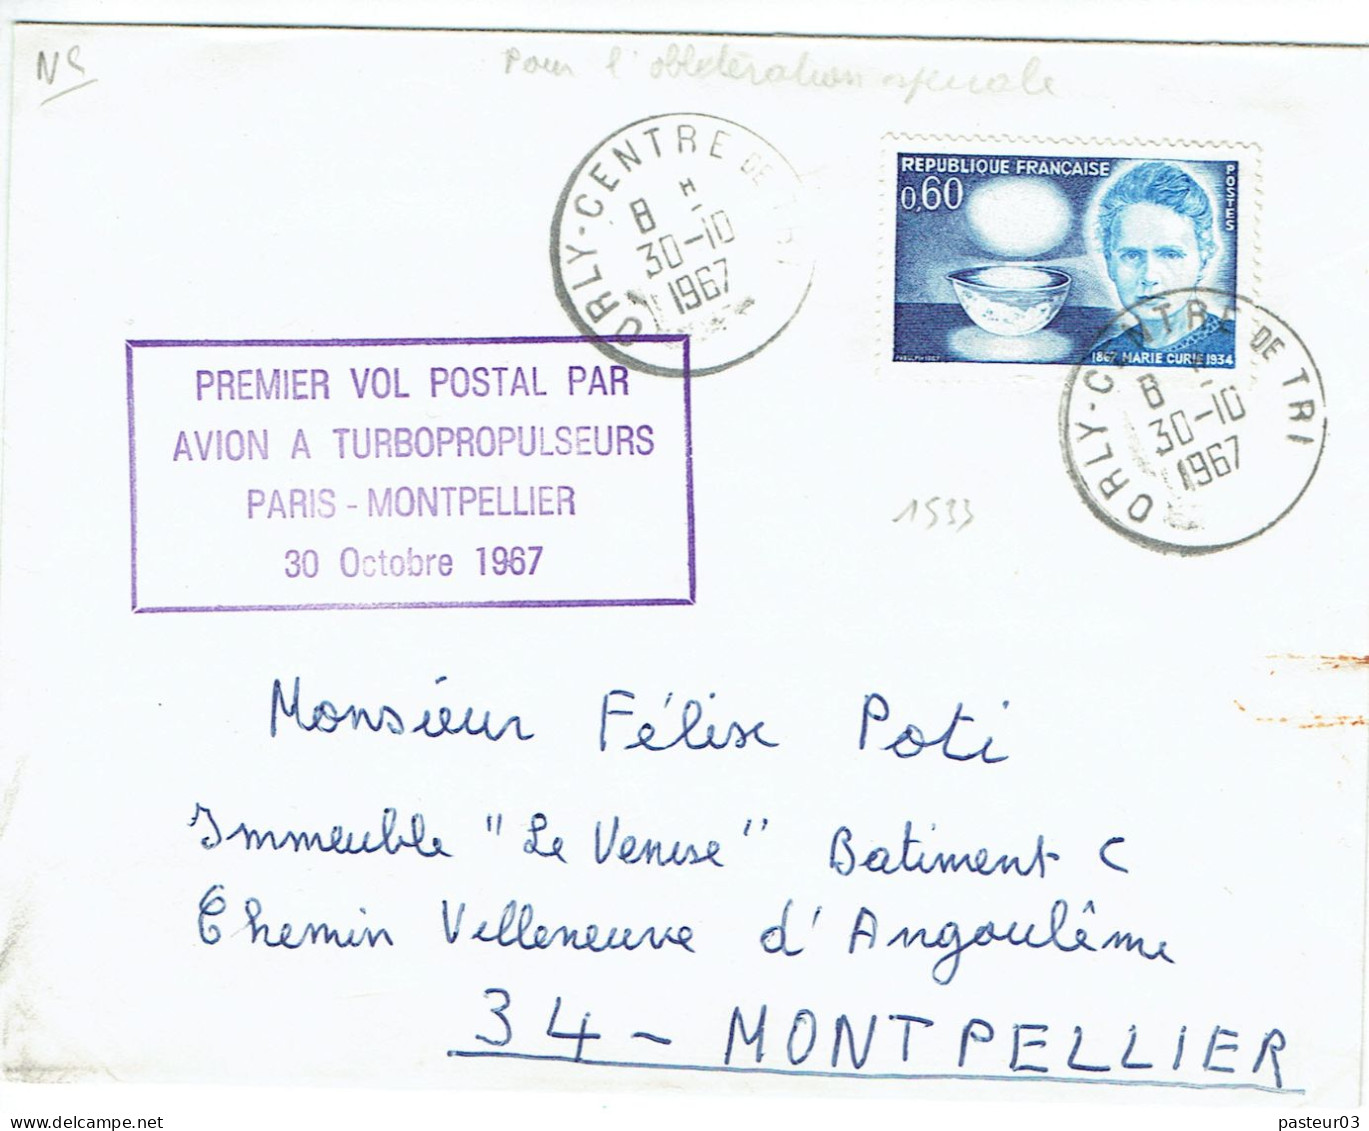 Premier Vol Postal Par Avion à Turbopropulseurs Paris Montpellier 30 Octobre 1967 Timbre N° 1533 De France TaD Orly Cent - 1960-.... Lettres & Documents